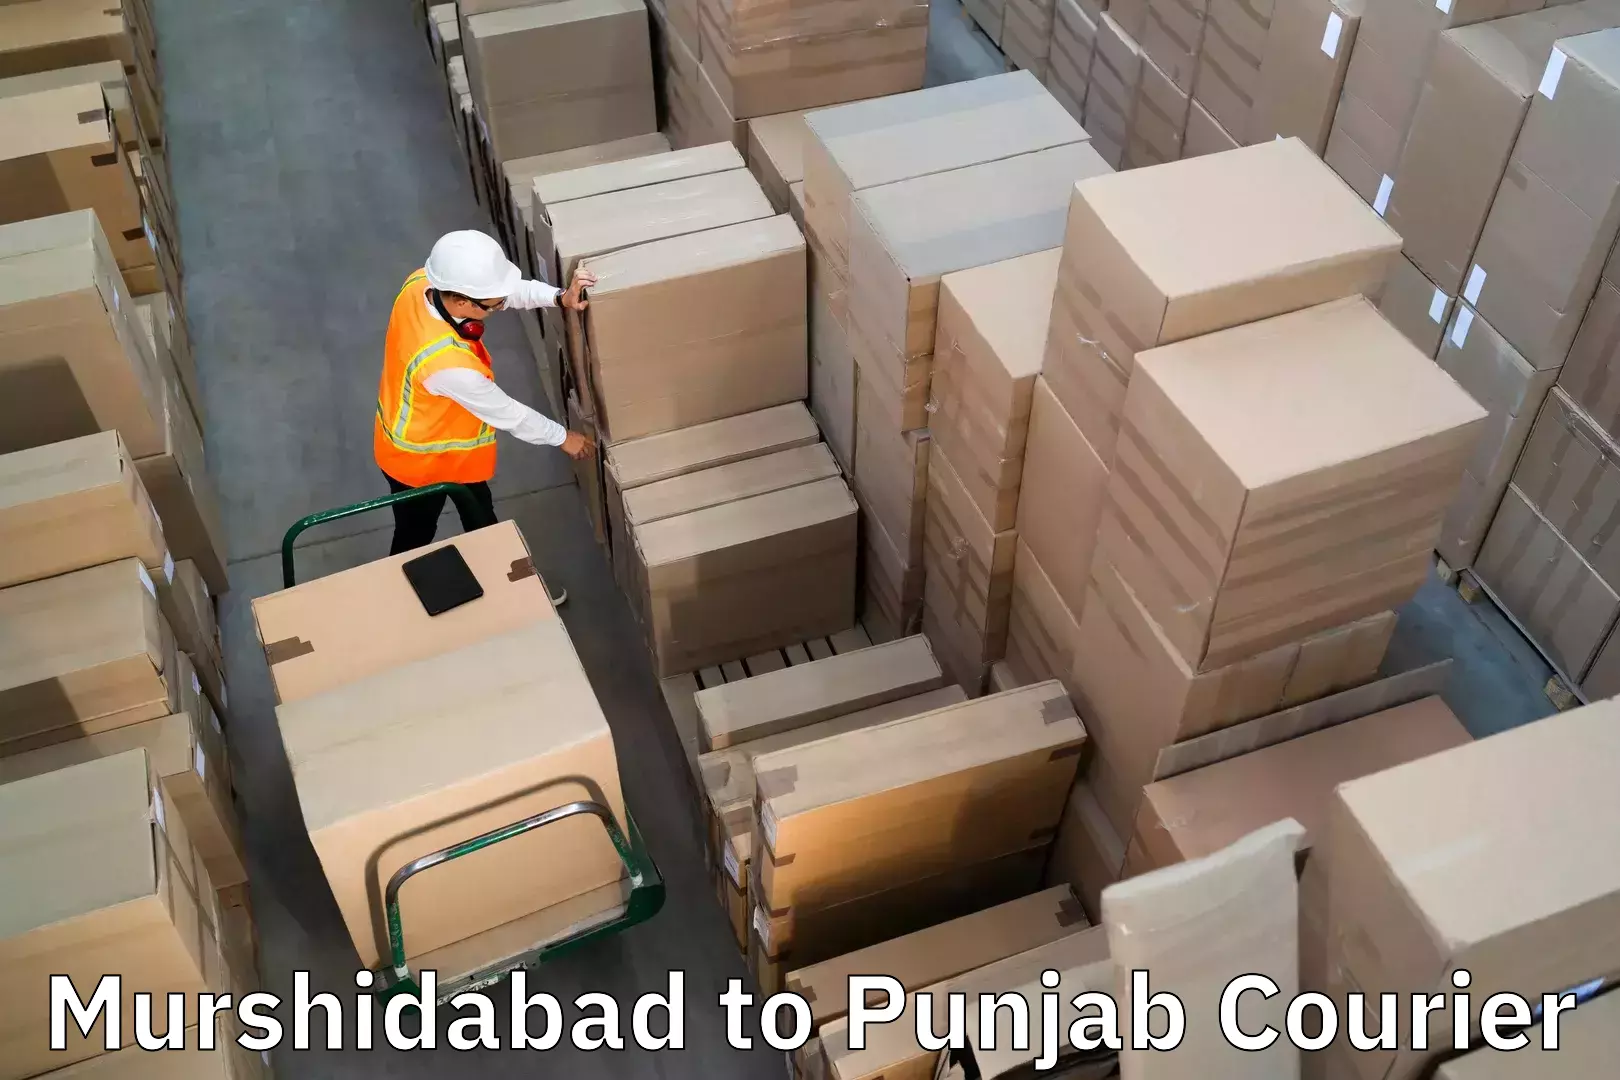 Luggage shipment specialists Murshidabad to Bathinda